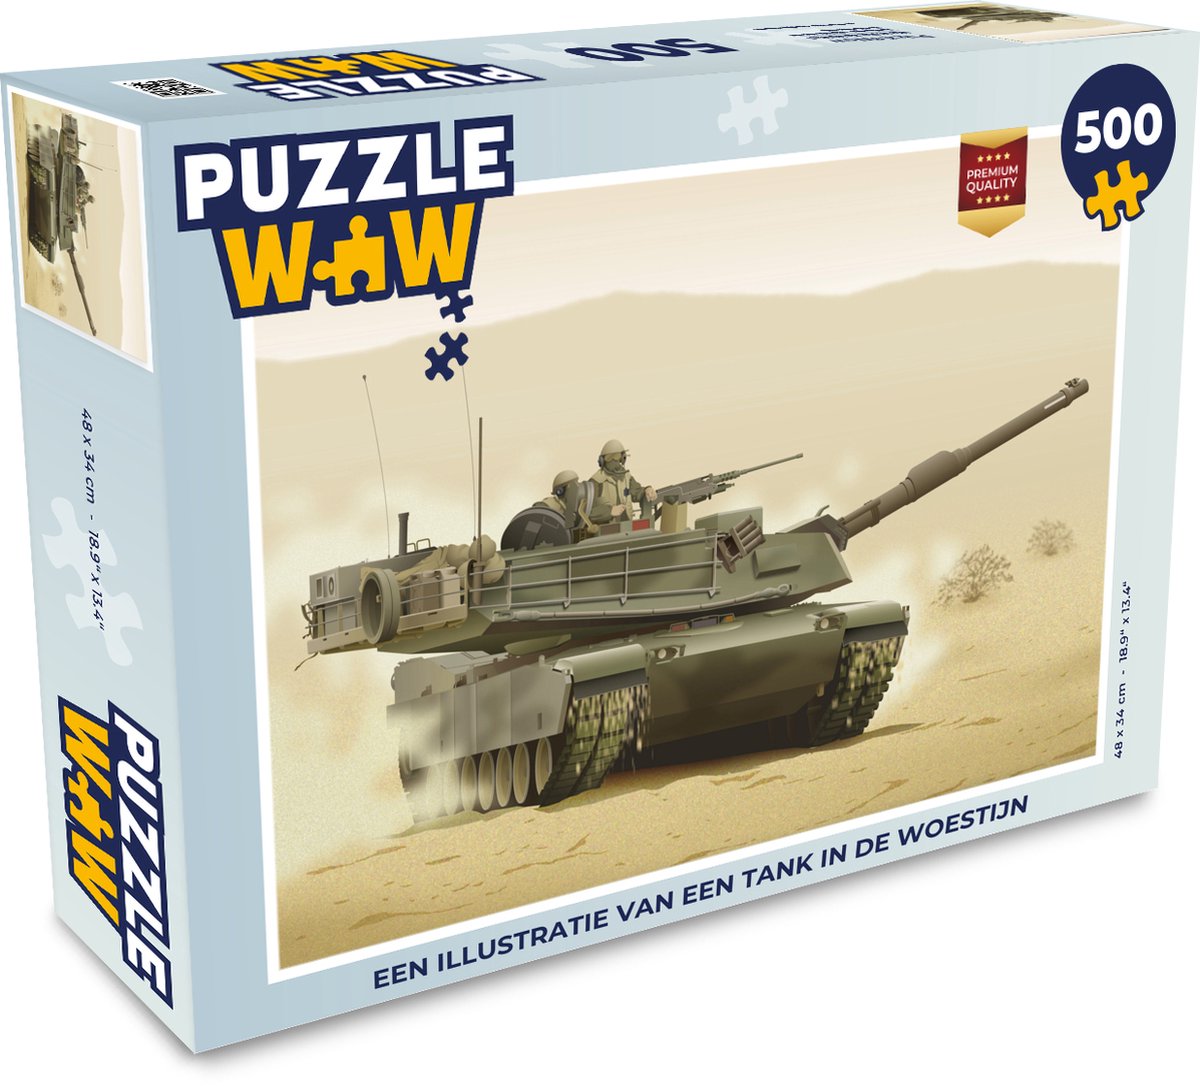 Afbeelding van product Puzzel 500 stukjes Tanks illustratie - Een illustratie van een tank in de woestijn - PuzzleWow heeft +100000 puzzels